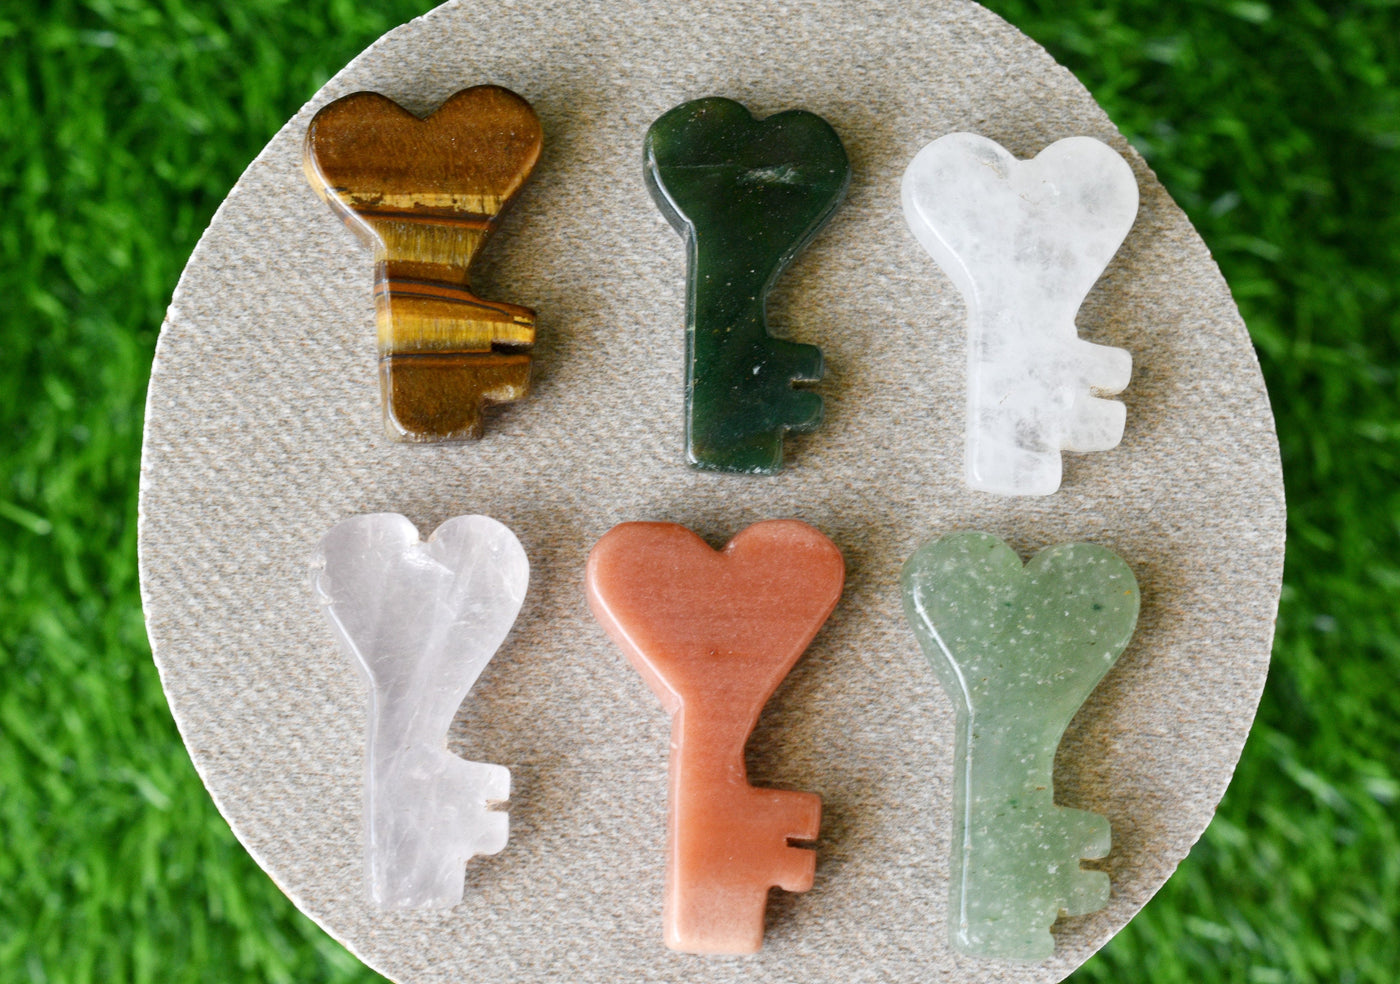 Polished Hand Carved Crystal Key, Gemstone Keys Home Decoration